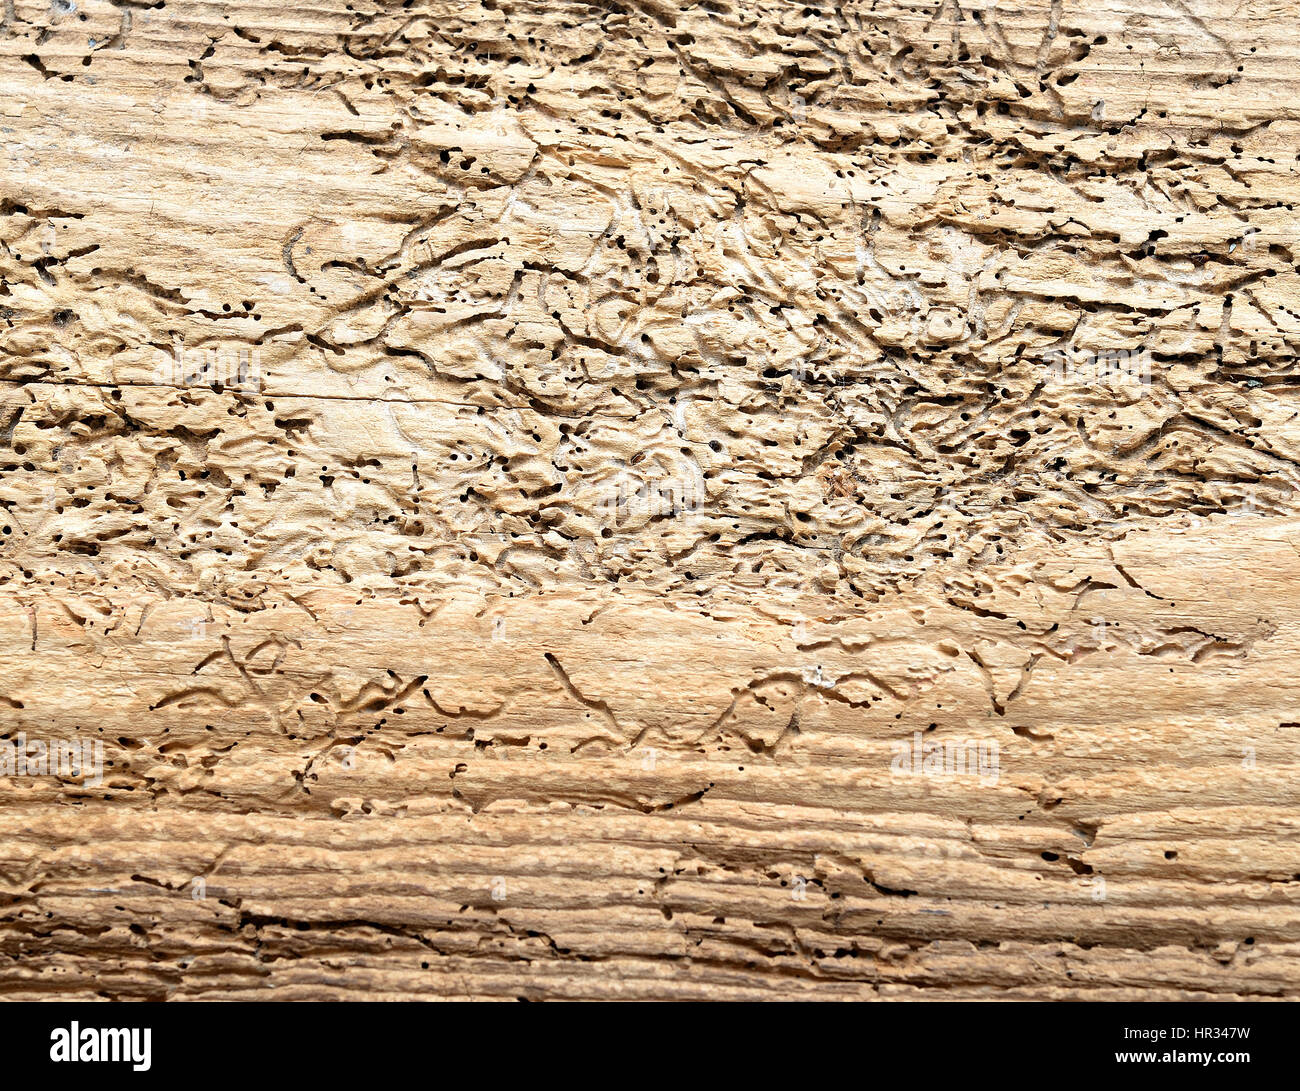 Driftwood background Stock Photo